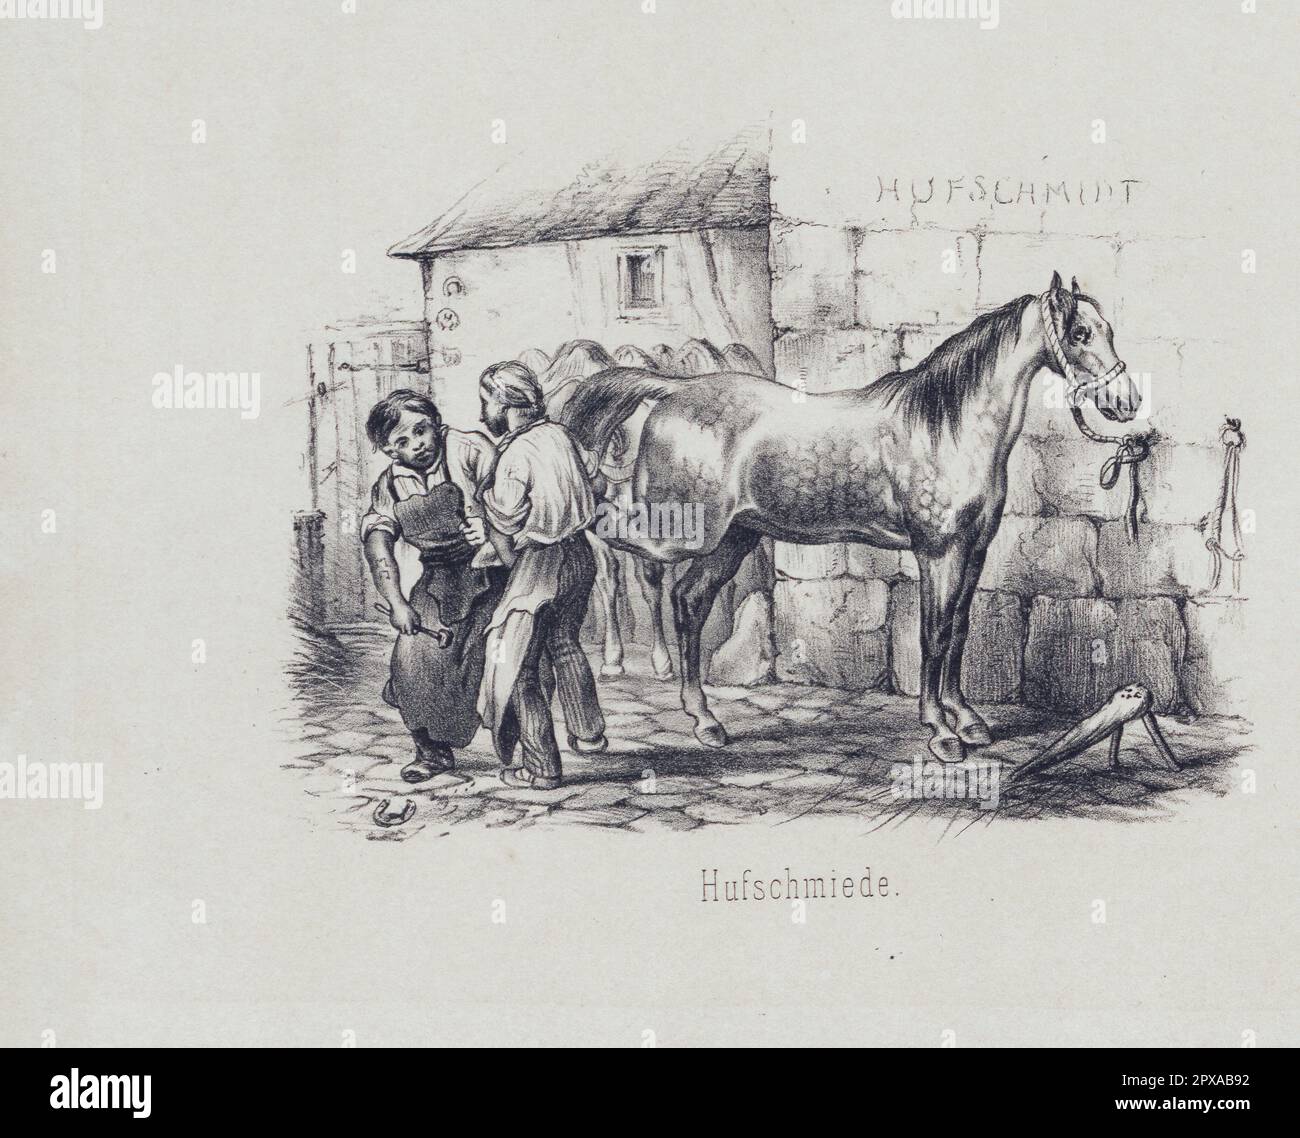 Gravure d'époque allemande de la vie rurale allemande : raquette à cheval, 1860 Banque D'Images